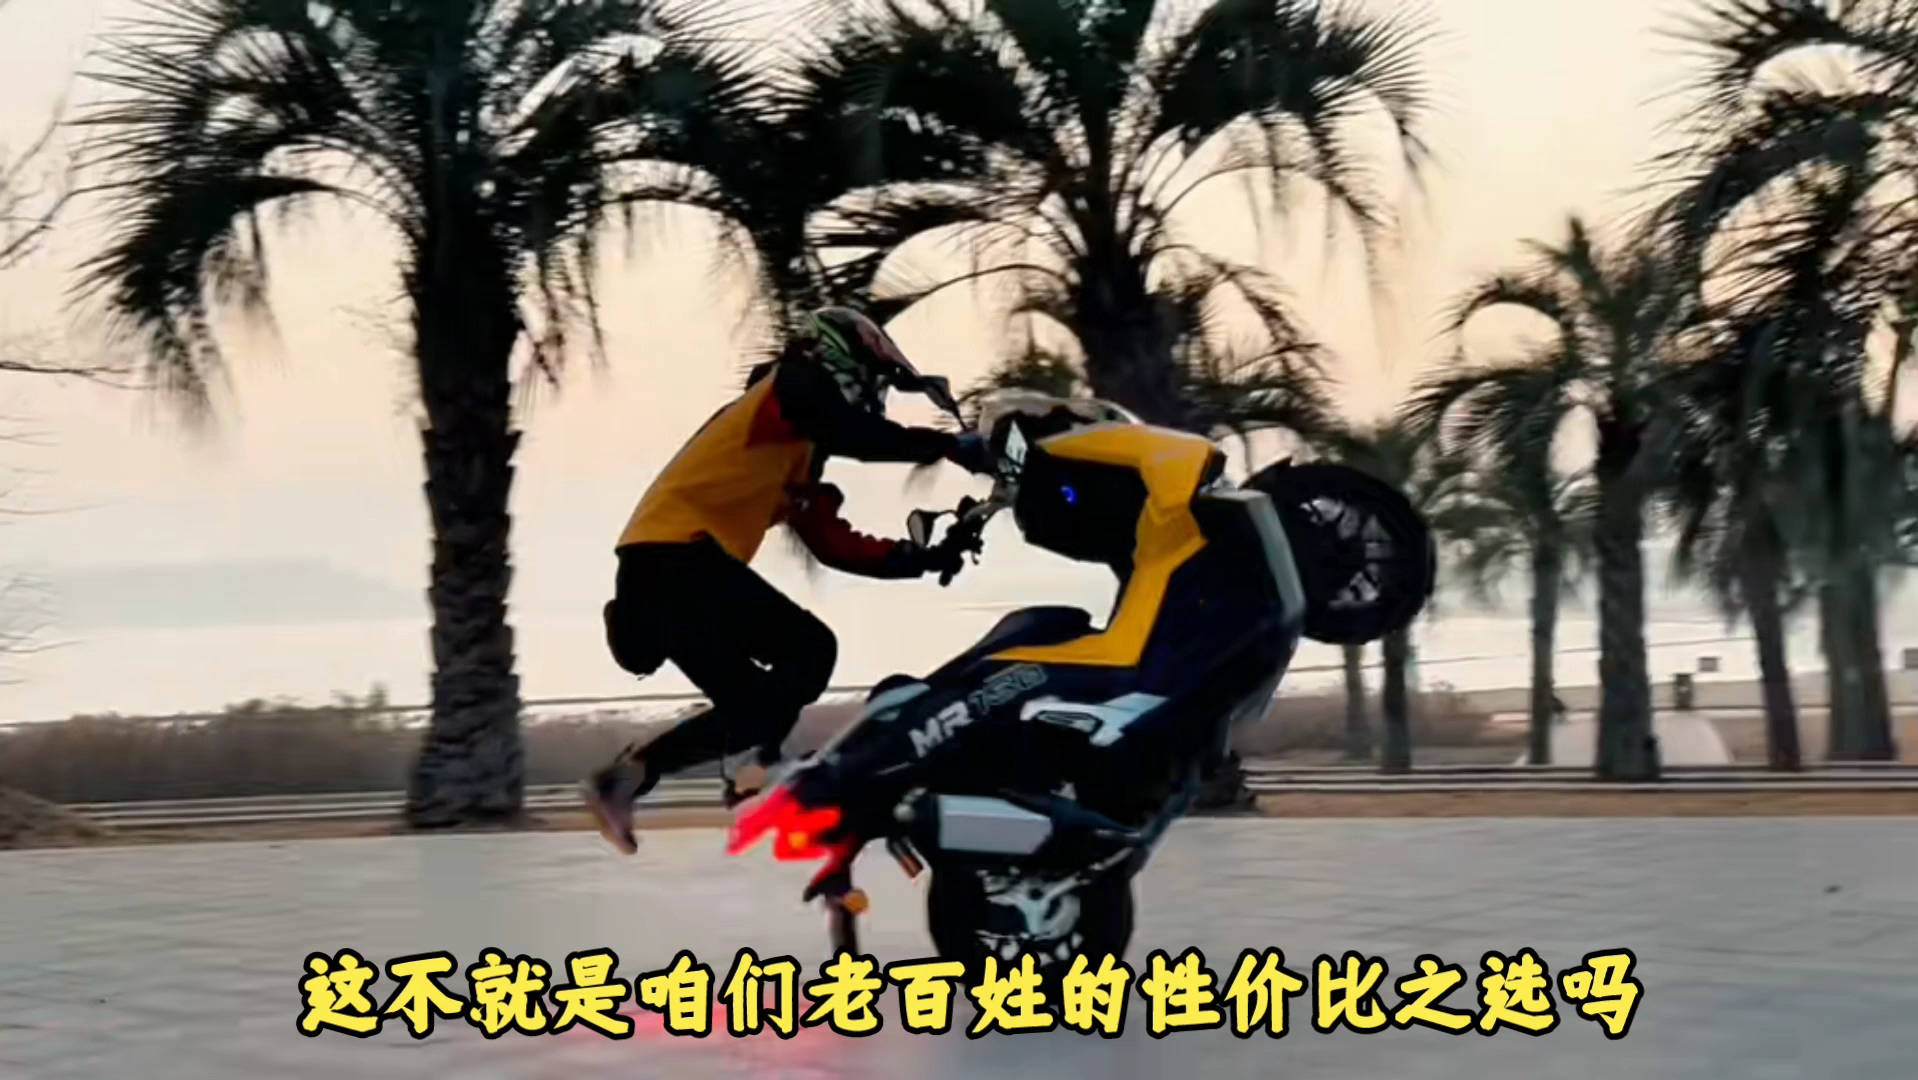 150水冷踏板黑马杀到！8800元起售！隆鑫+博世护航！年轻人的第一台踏板摩托车！